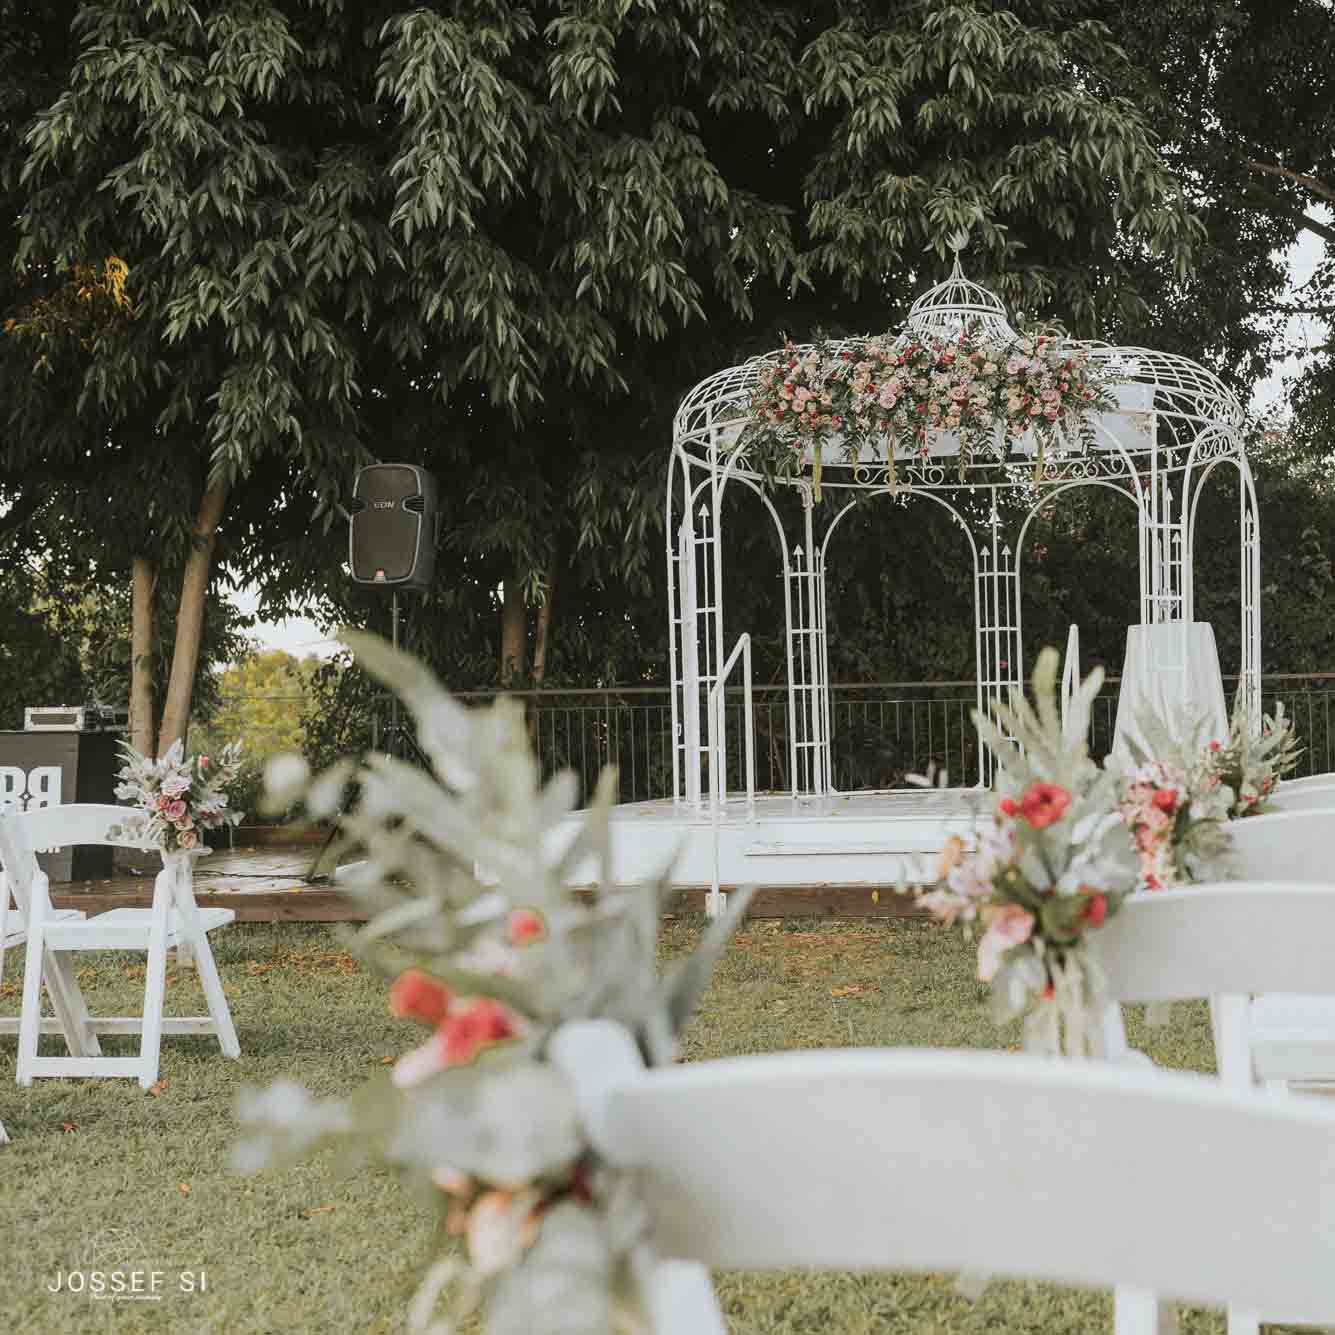 גזיבו לבן מקושט בפס פרחים וזרי פרחים קטנים קשורים לכסאות עץ לבנים על הדשא